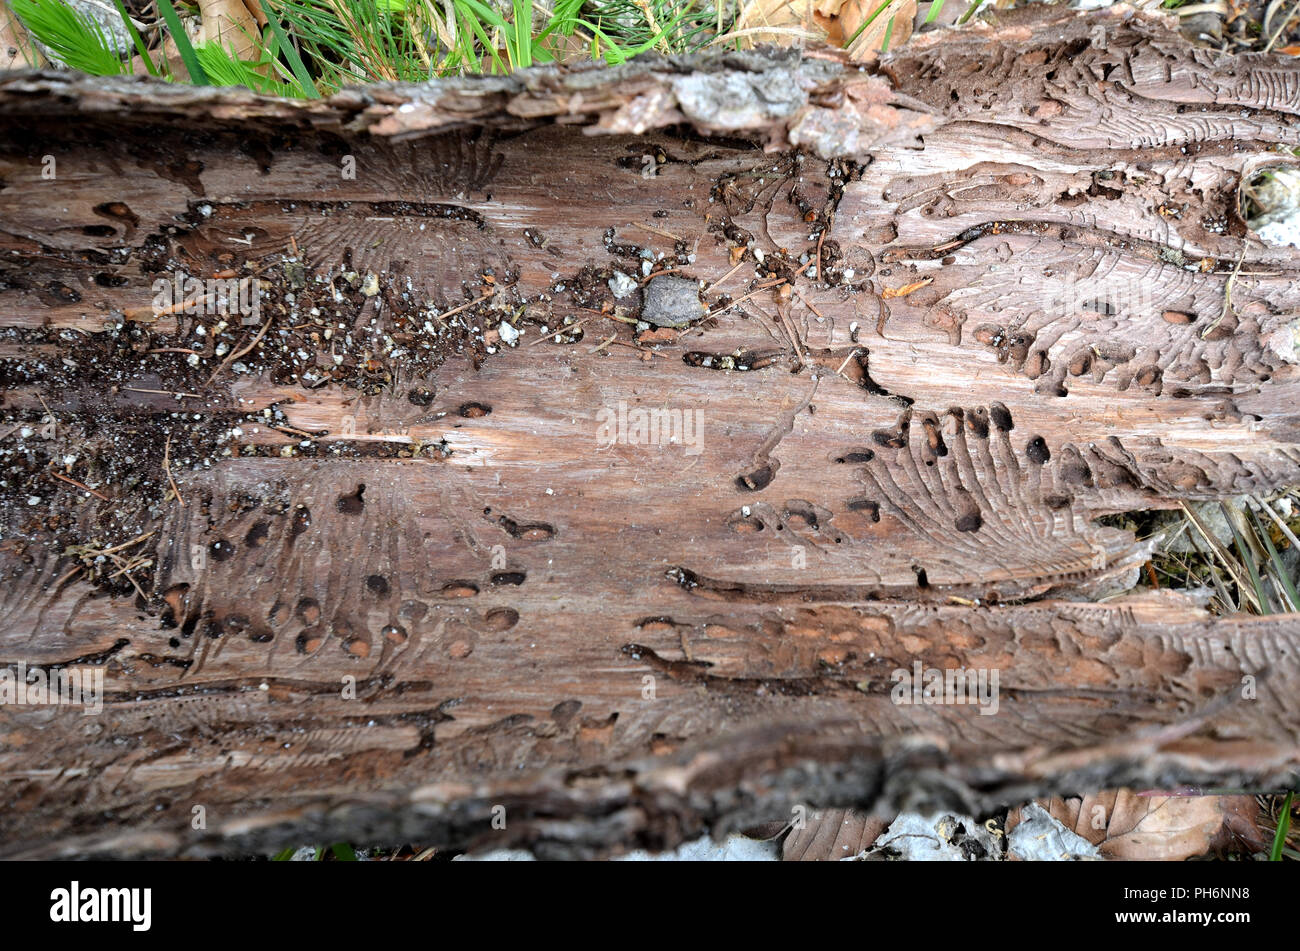 bark beetle Stock Photo